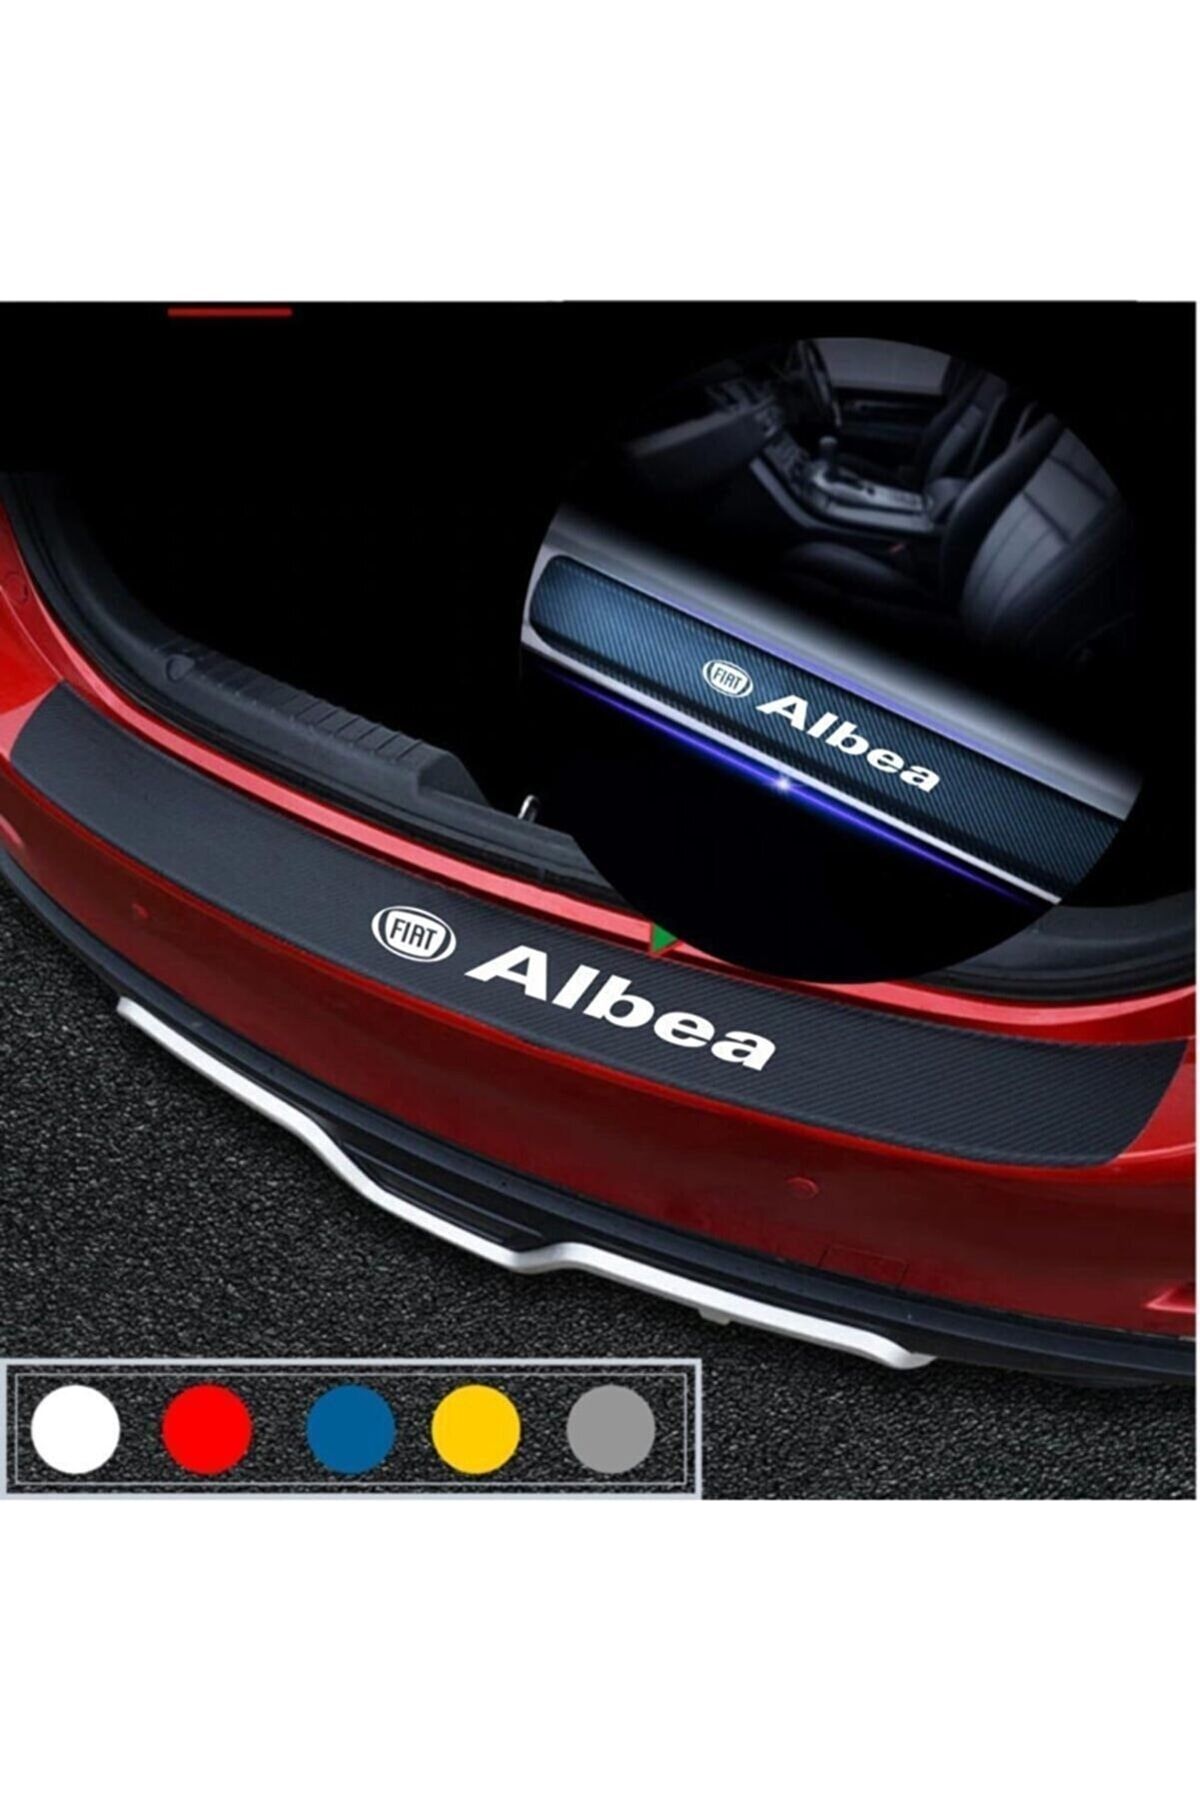 Özkaş ticaret Fiat Albea Için Bagaj Ve Kapı Eşiği Karbon Oto Sticker